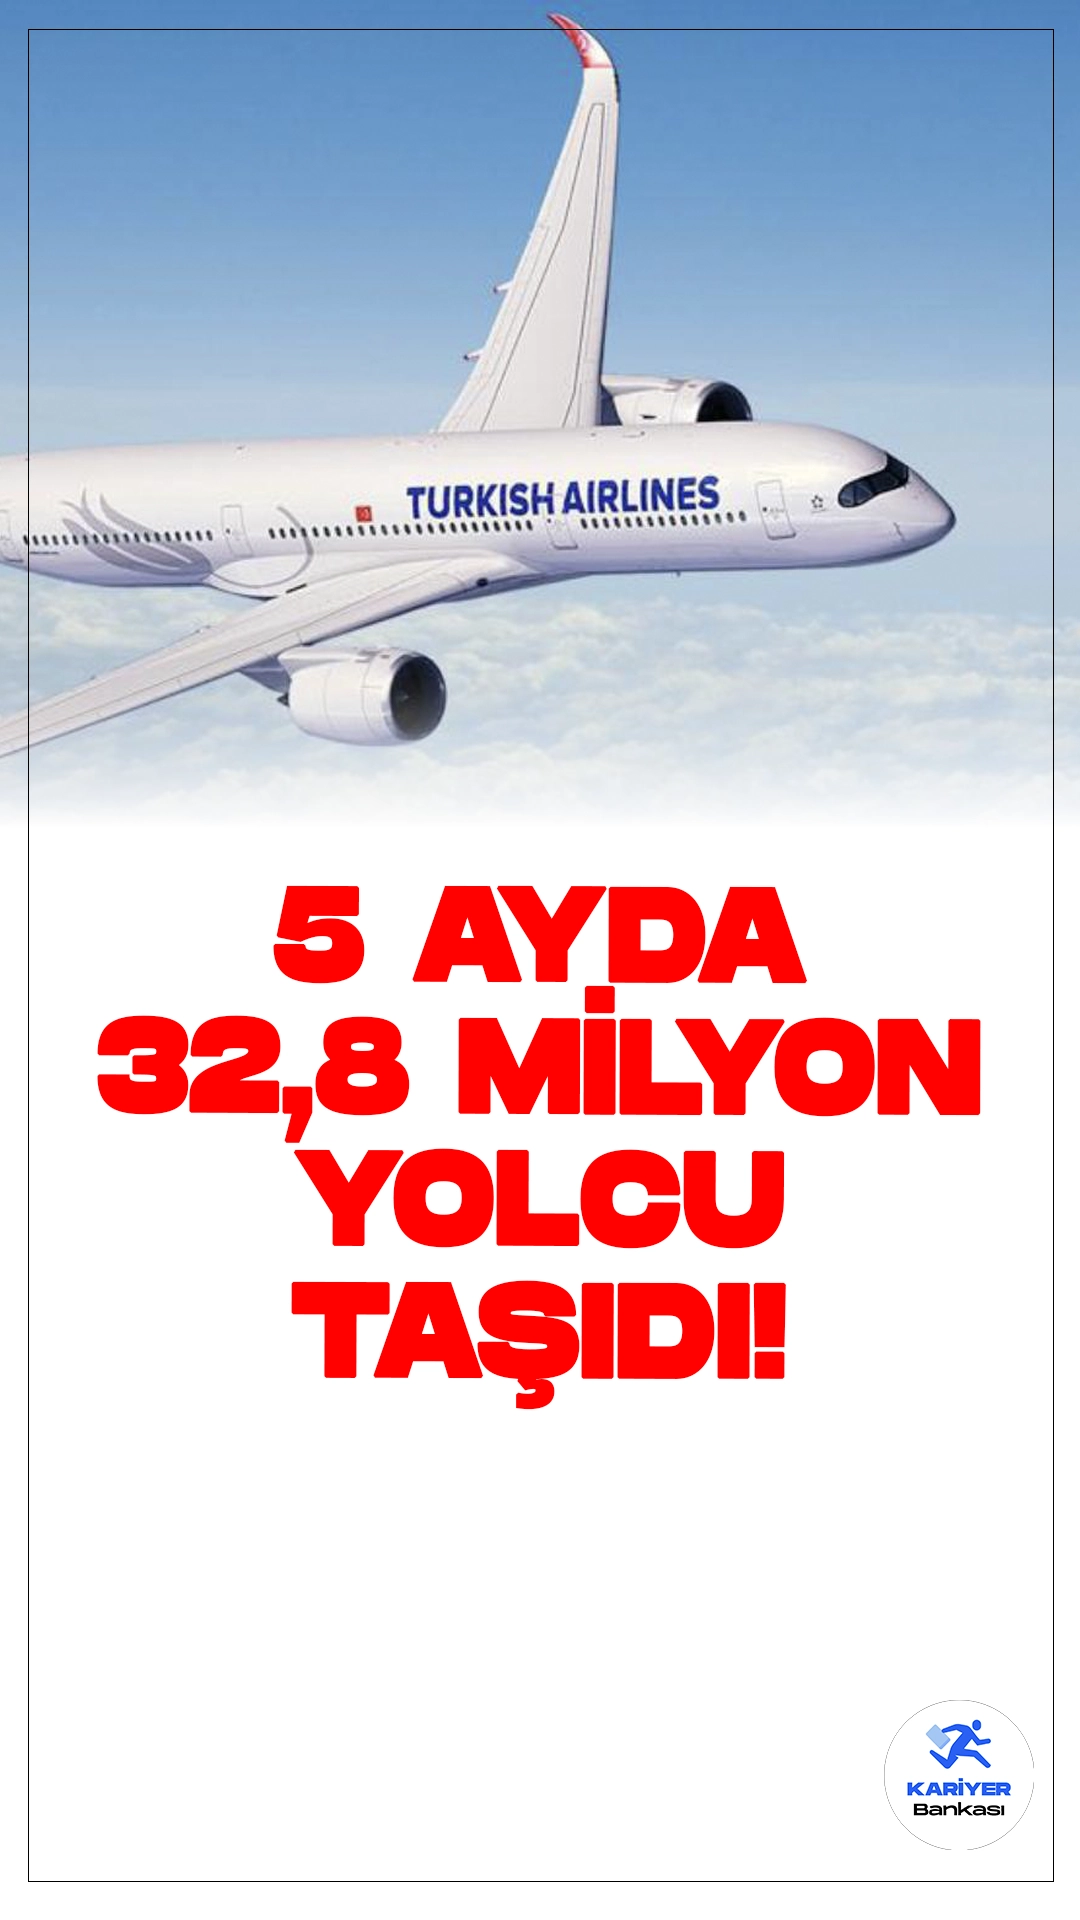 THY 5 Aylık Dönemde 32,8 Milyon Yolcu Taşıdı.Türk Hava Yolları (THY), 2024 yılının ilk 5 ayına ilişkin trafik ve yolcu verilerini Kamuyu Aydınlatma Platformu'na (KAP) bildirdi. Bu dönemde THY, toplamda 32,8 milyon yolcu taşıdı ve geçen seneye göre yolcu sayısında %5,7 artış kaydetti. Mayıs ayı sonu itibariyle filodaki uçak sayısı ise 456'ya ulaştı.